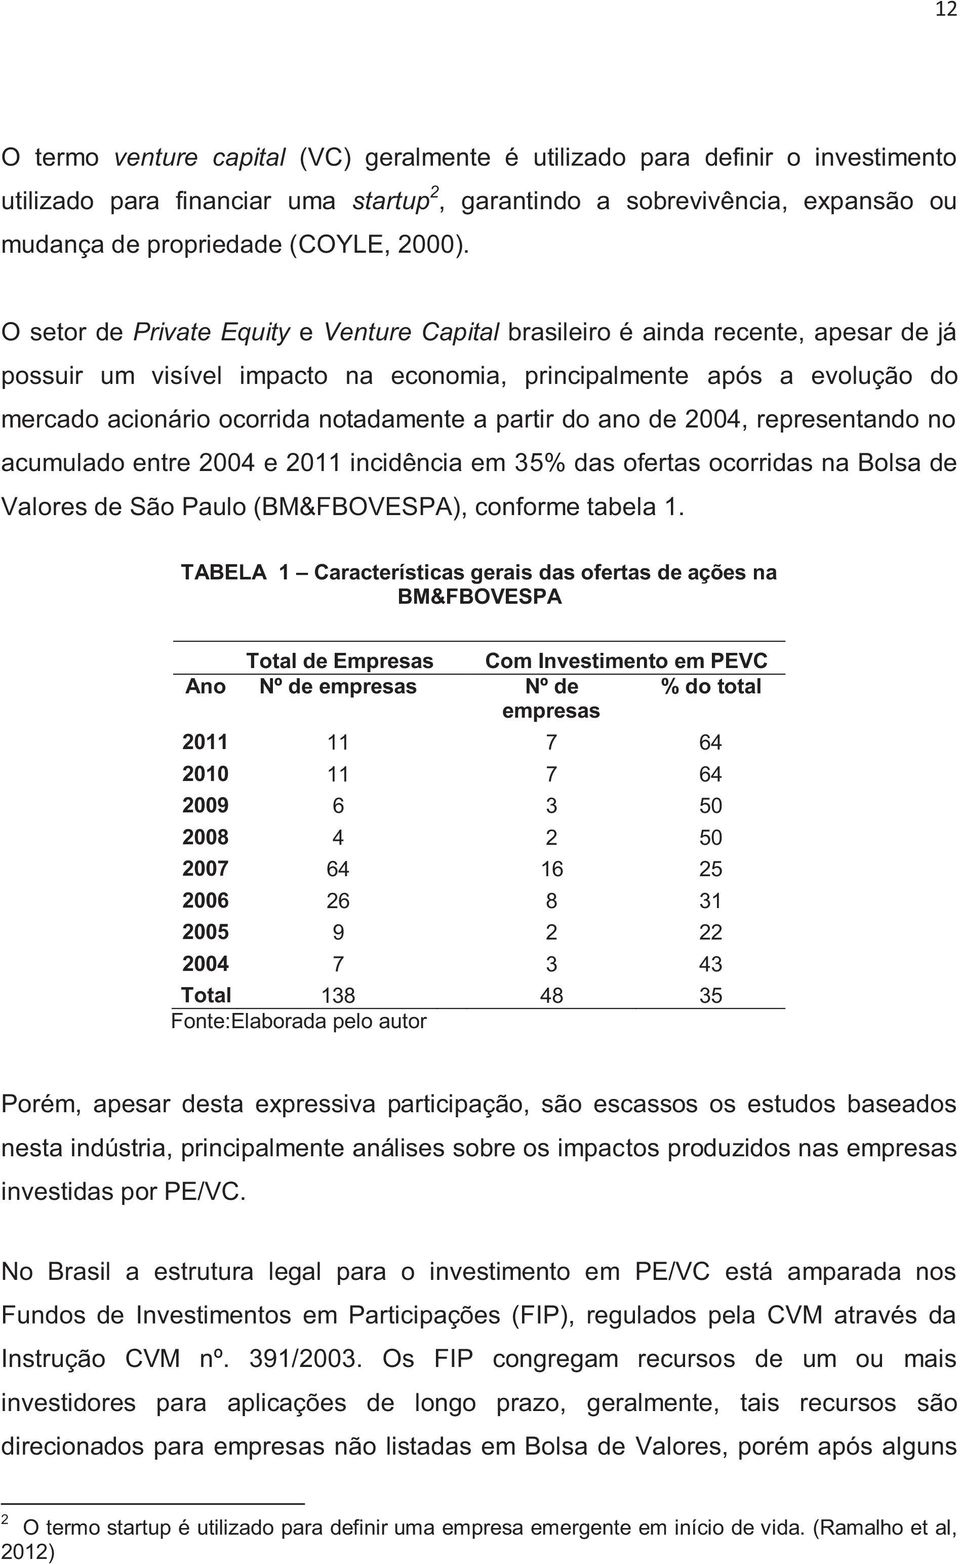 partir do ano de 2004, representando no acumulado entre 2004 e 2011 incidência em 35% das ofertas ocorridas na Bolsa de Valores de São Paulo (BM&FBOVESPA), conforme tabela 1.